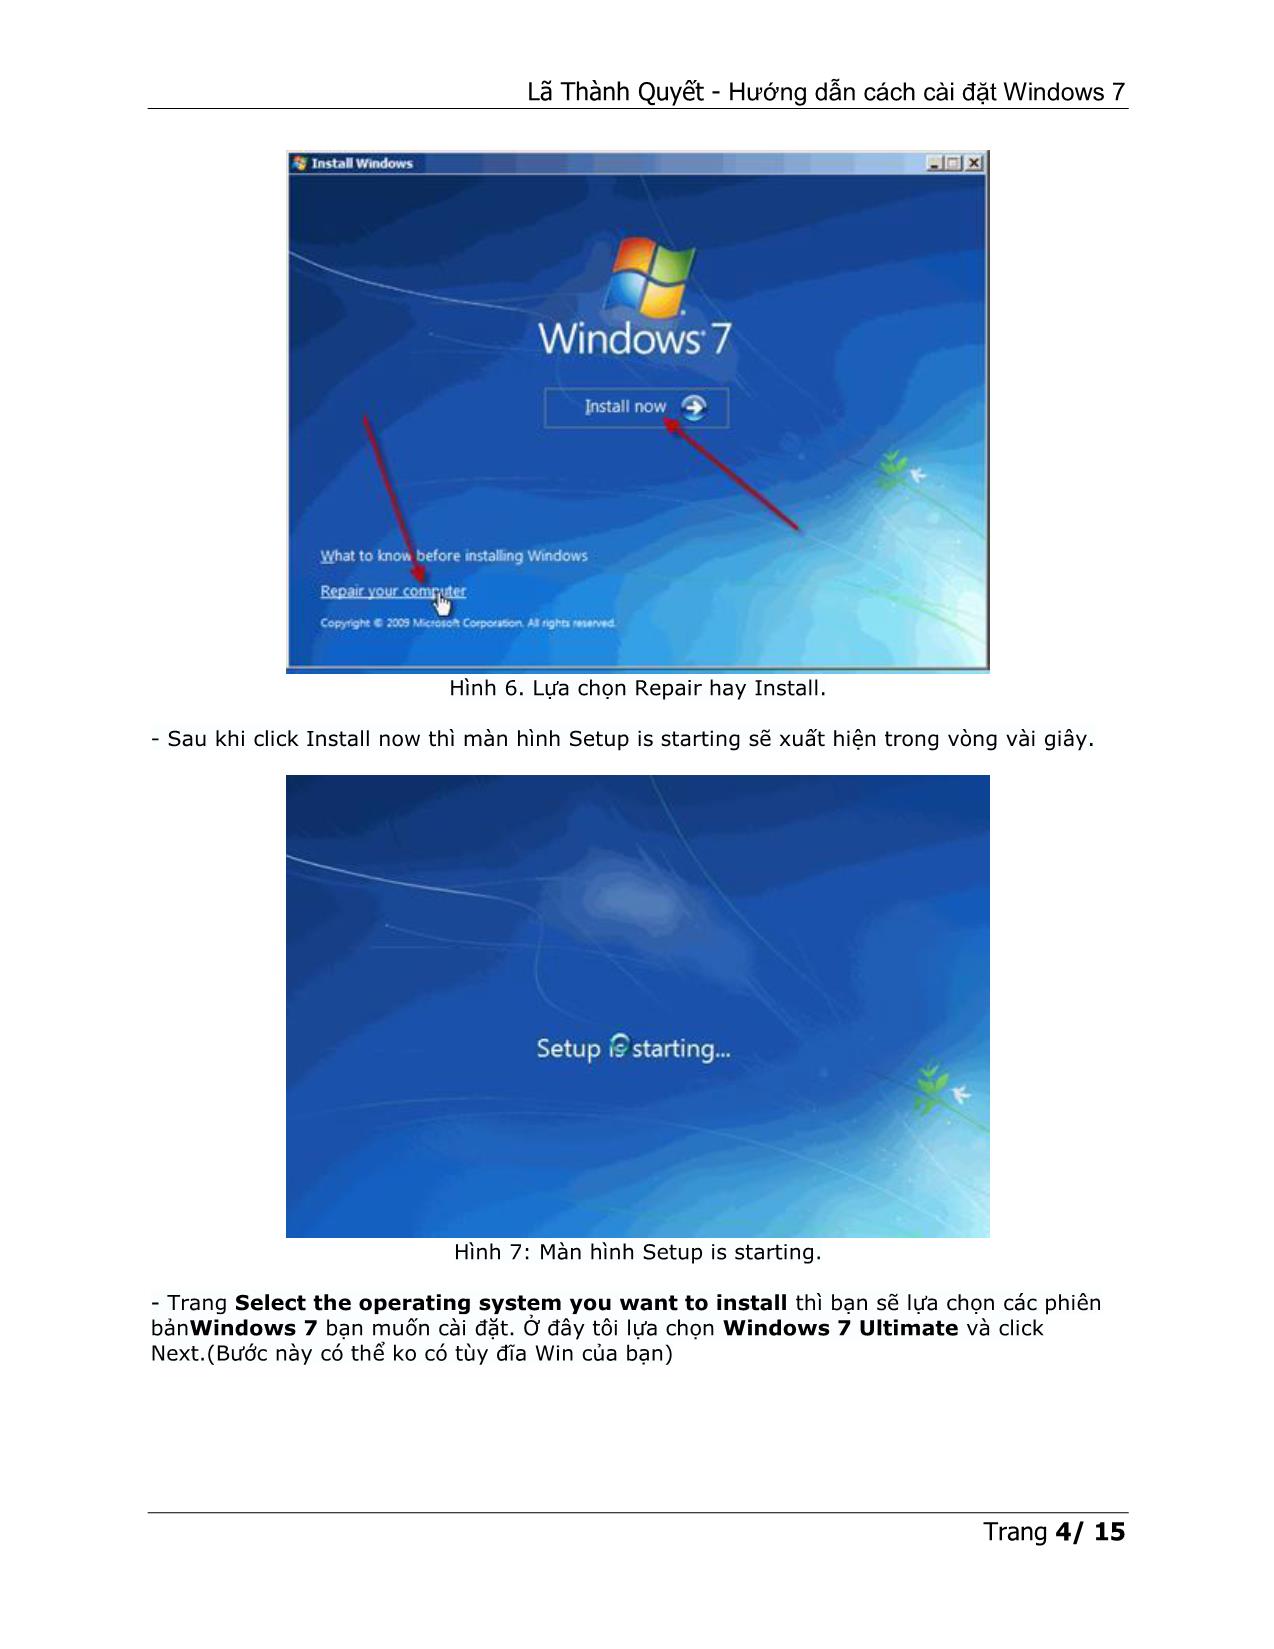 Hướng dẫn cách cài đặt Windows 7 trang 4